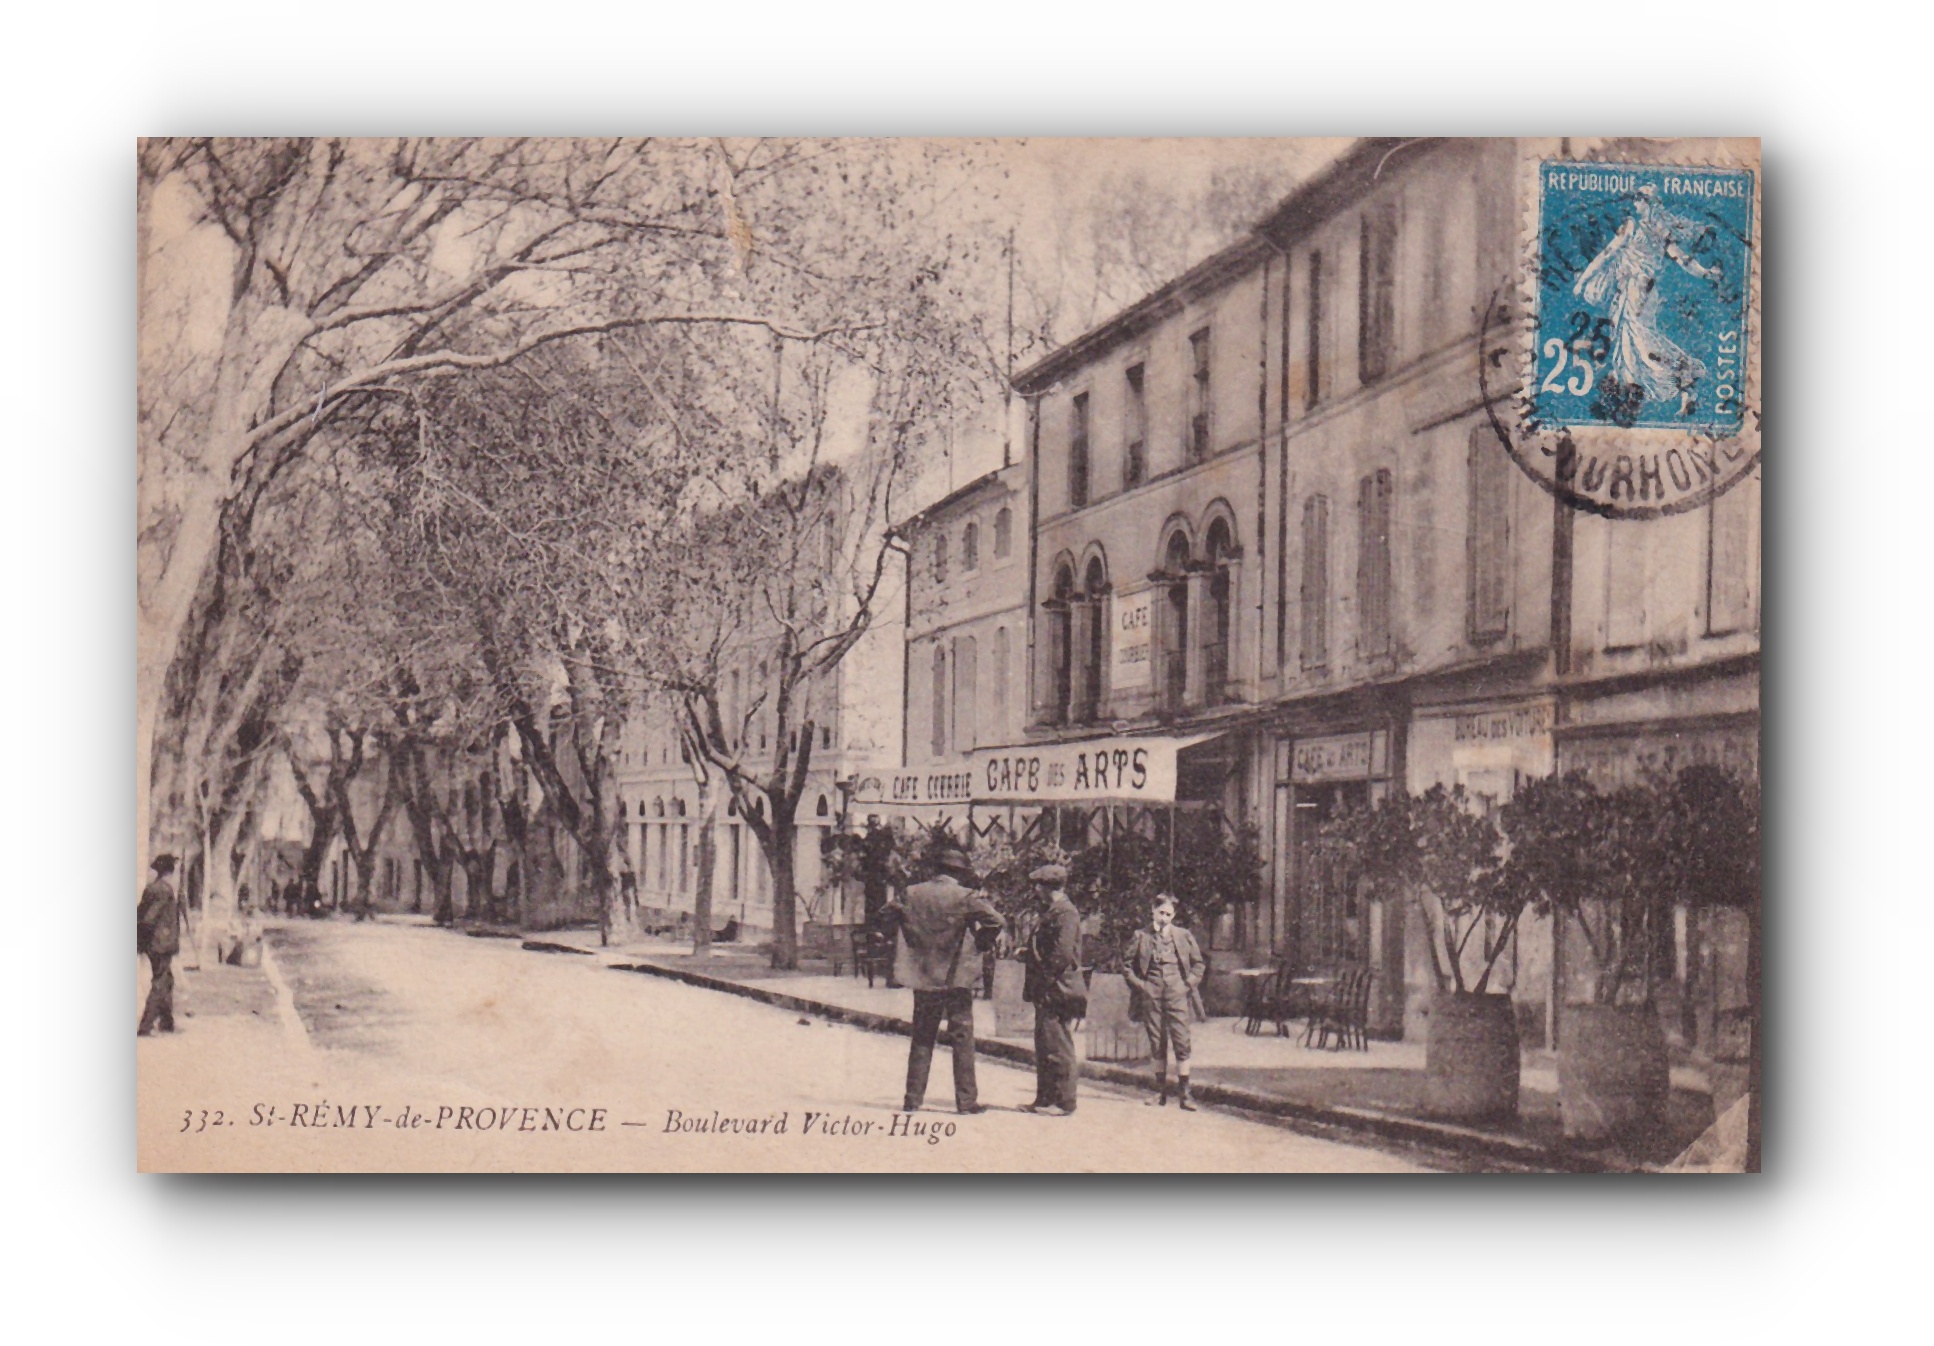 - St. - RÉMY -de- PROVENCE - Boulevard Victor Hugo - 24.08.1920 -